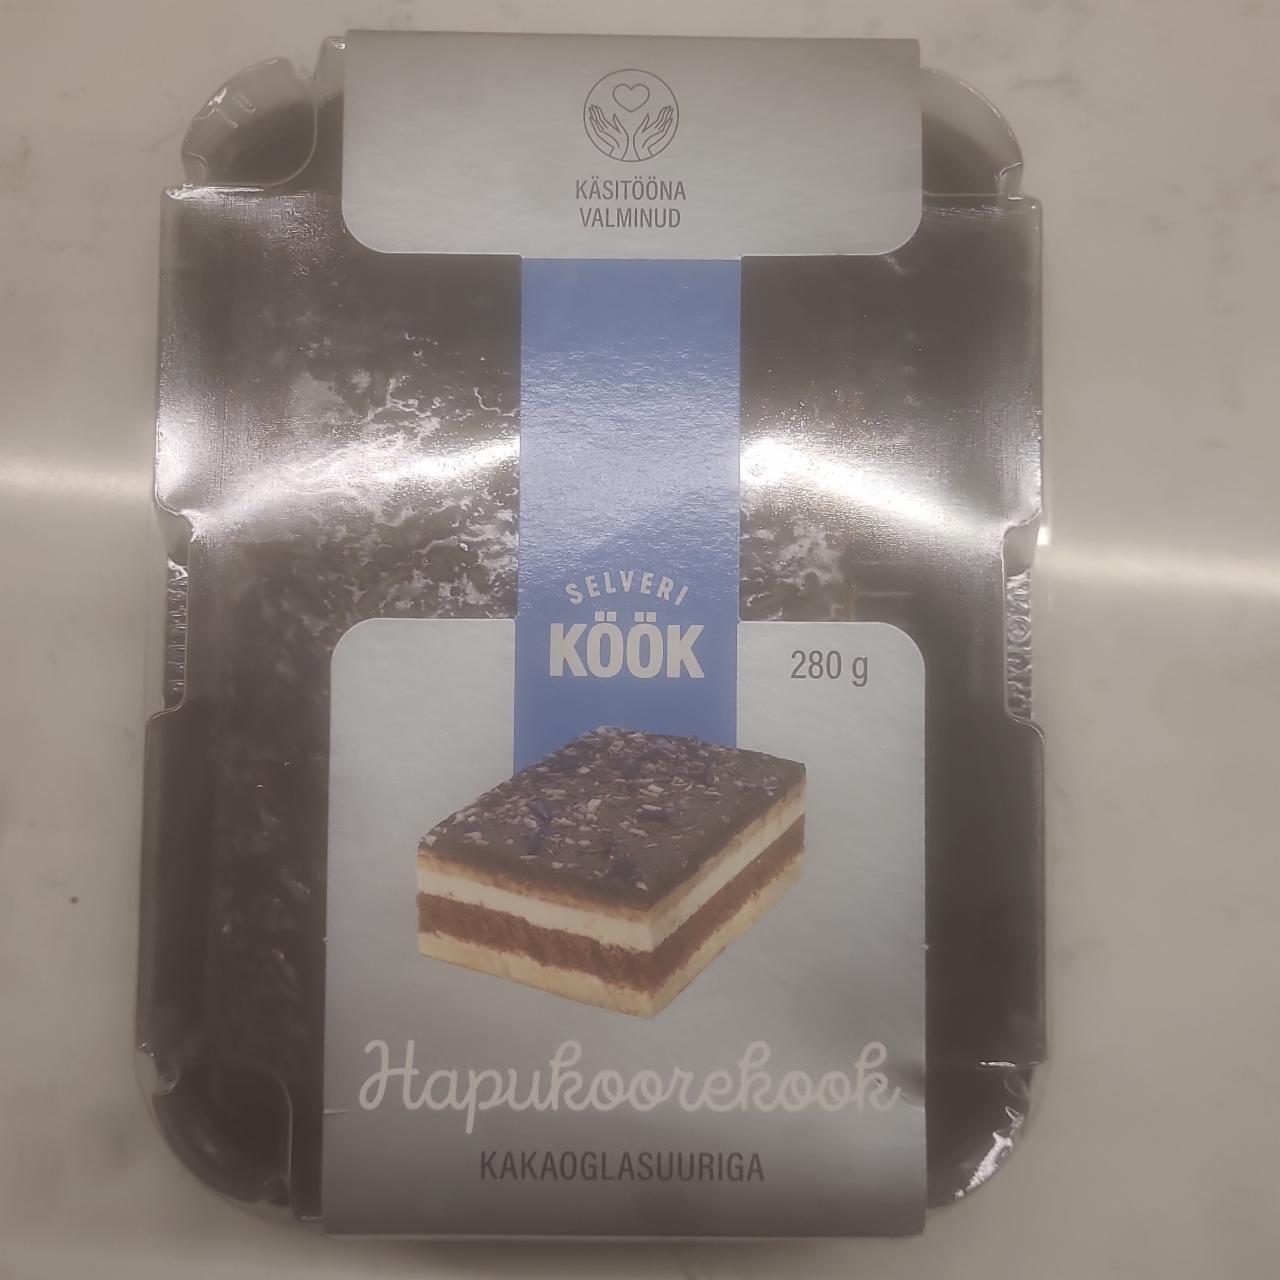 Фото - десерт с какао hapukoorekook Selveri kook